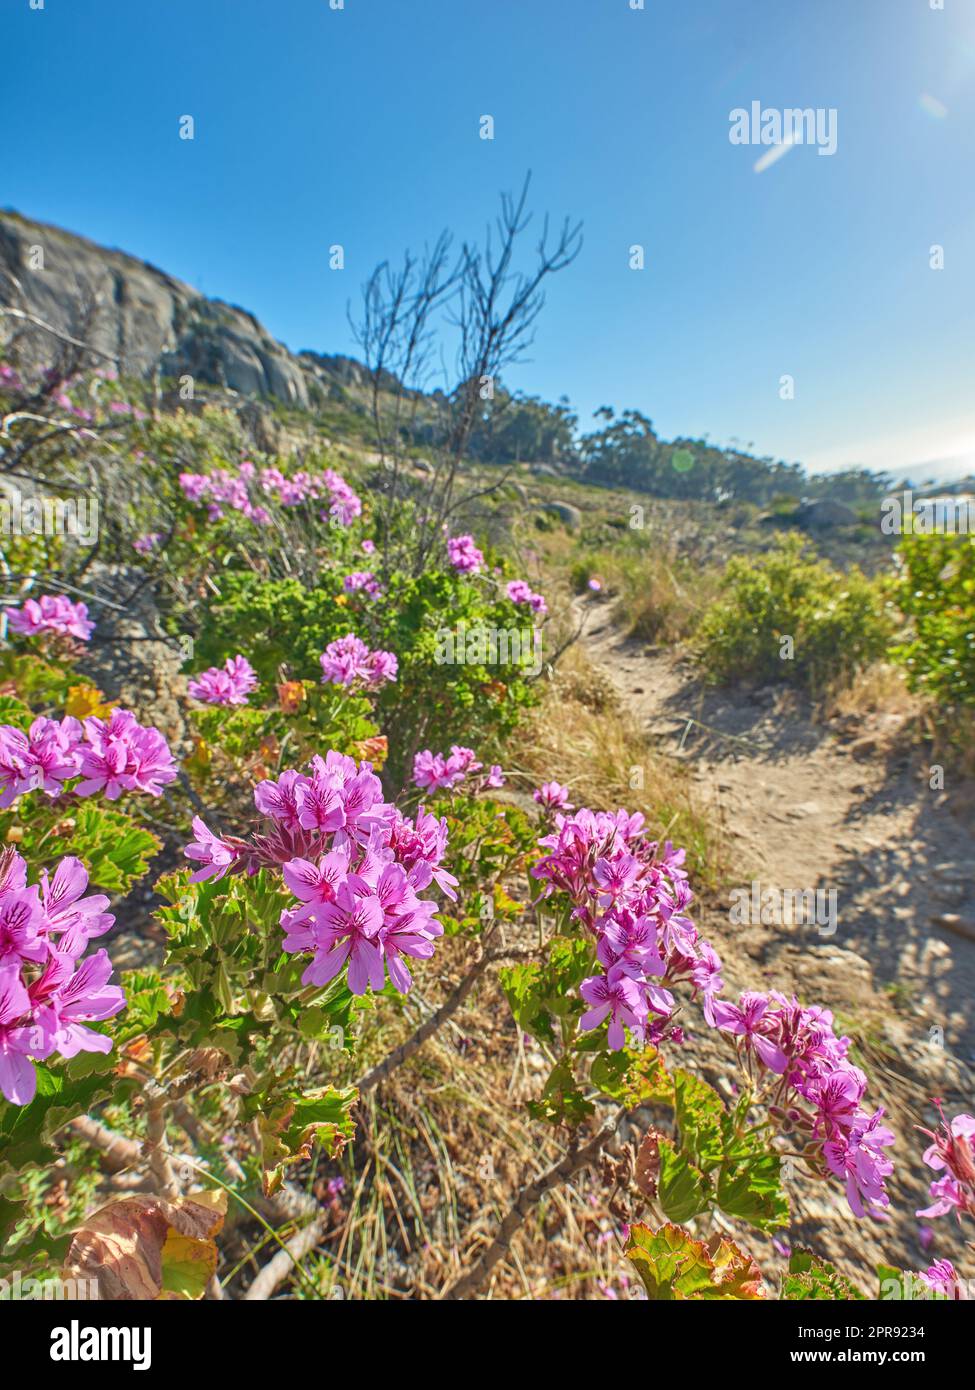 Sentiero stretto su una montagna con piante colorate e alberi nella natura che fioriscono nel loro ecosistema naturale a città del Capo. Fiori rosa su steli verdi che crescono sul lato di una collina in una giornata di sole con cielo blu Foto Stock